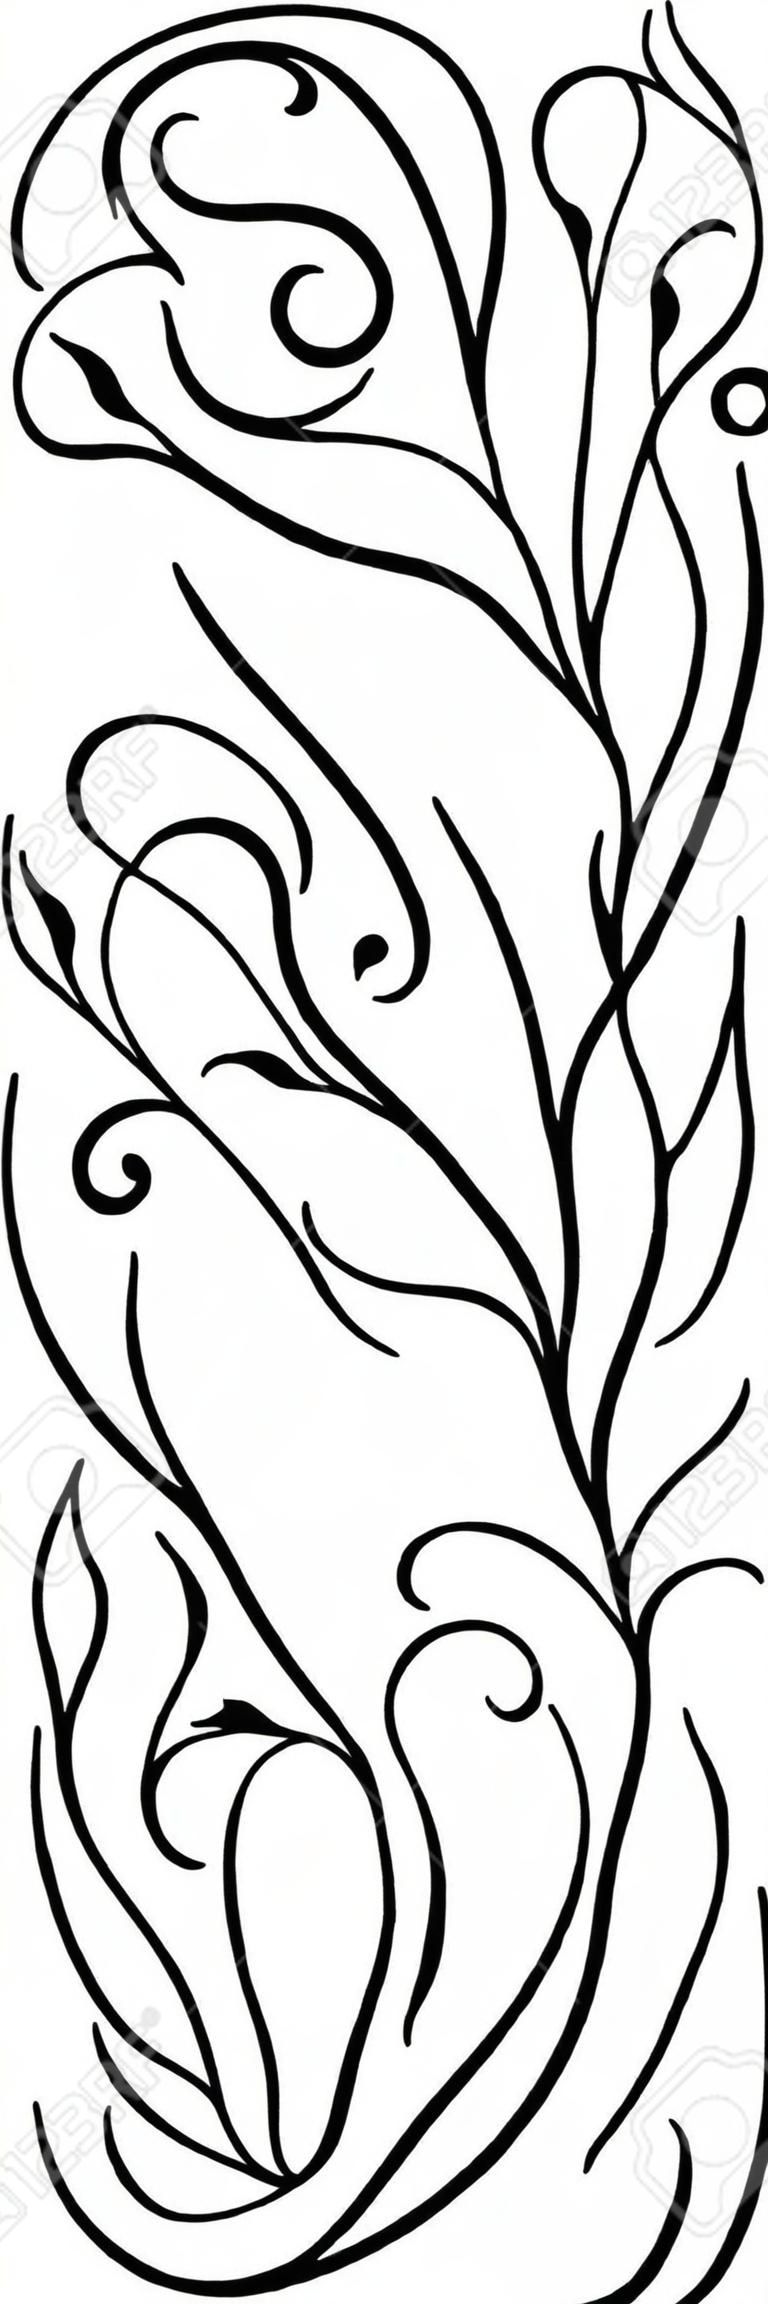 Czarno-biały wzór kwiatowy. Ozdoba filigranowa. Stylizowany szablon tapety, tekstylne, szal, dywan.